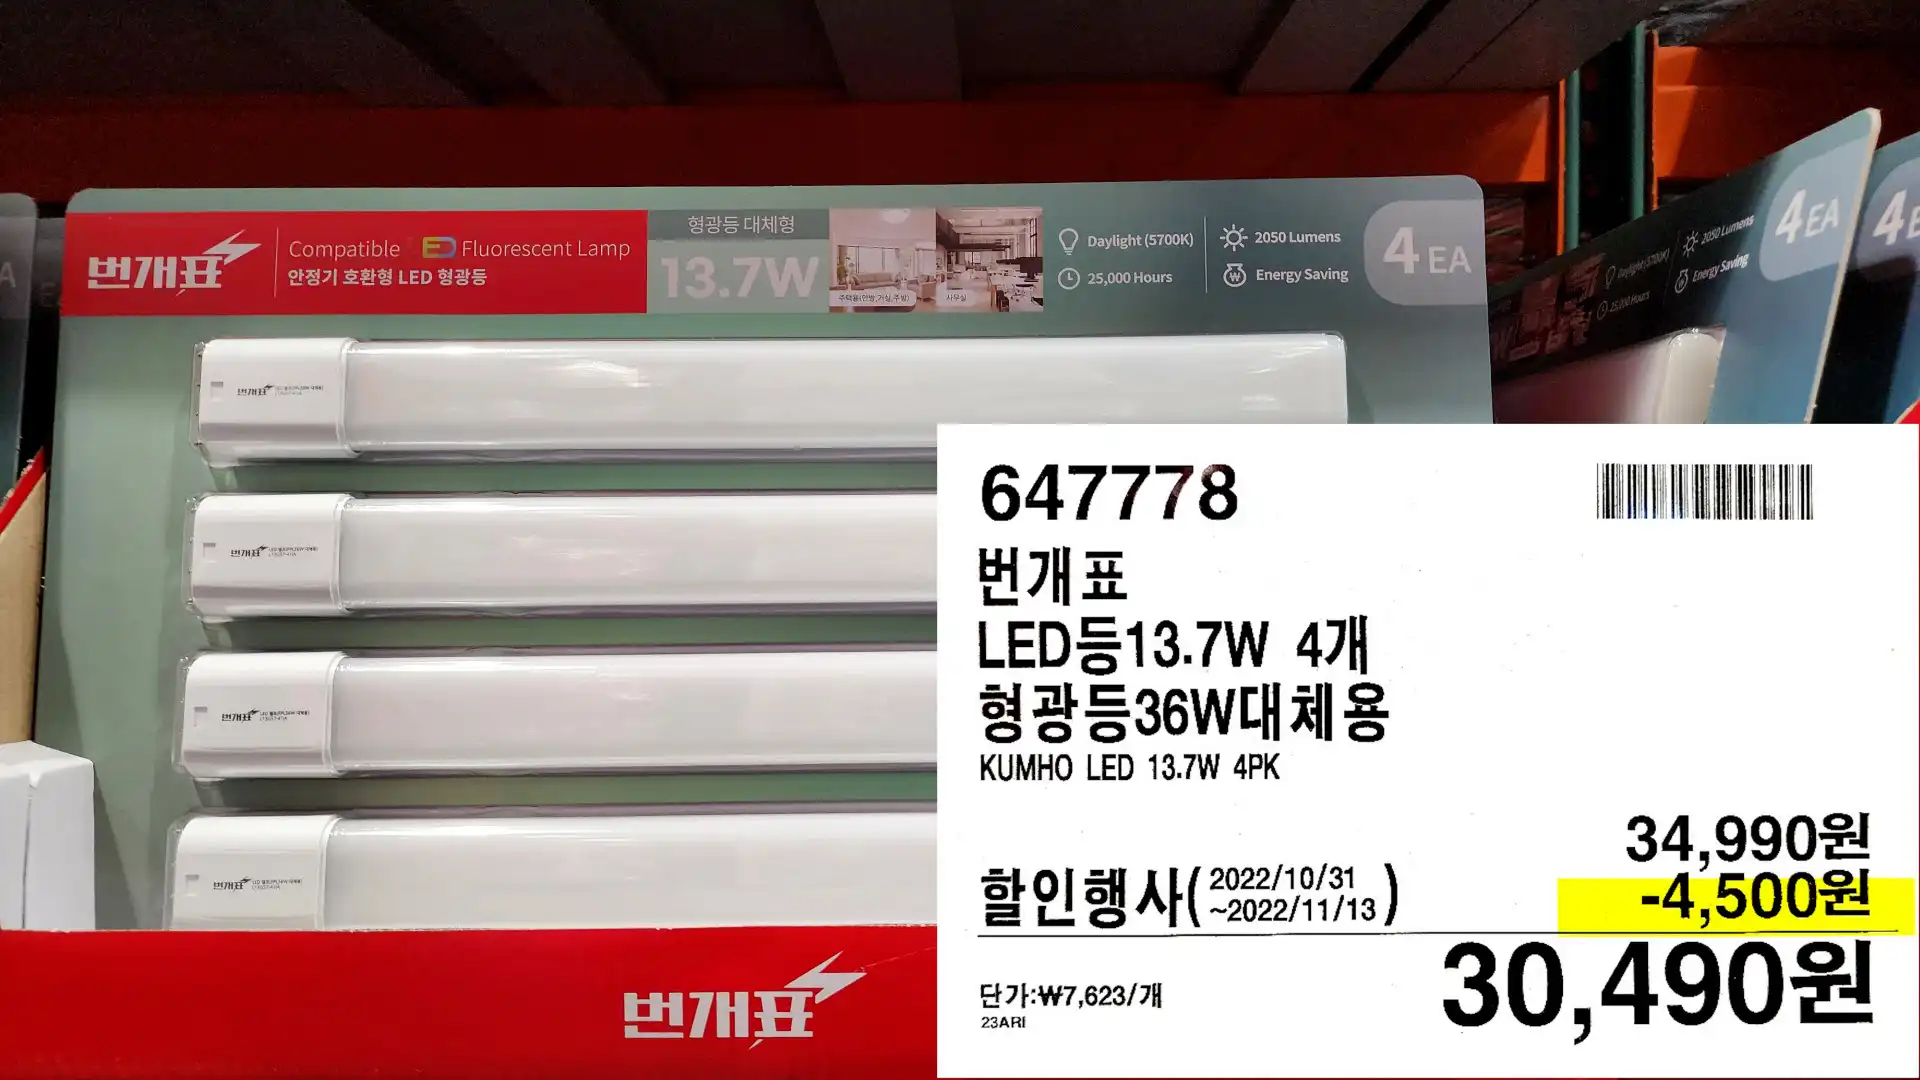 번개표
LED등13.7W 4개
형광등36W대체용
KUMHO LED 13.7W 4PK
30,490원